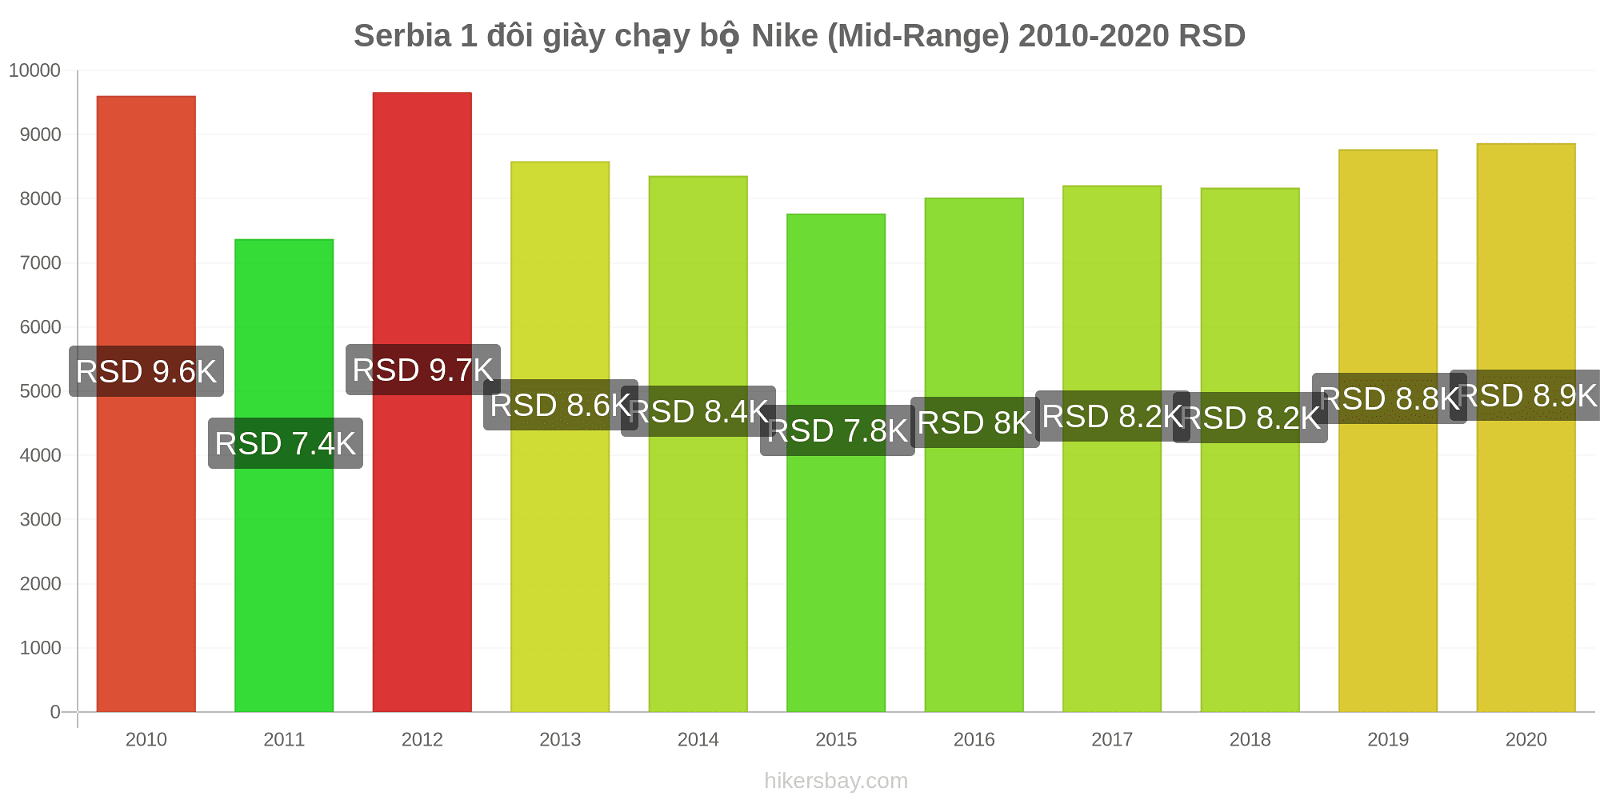 Serbia thay đổi giá 1 đôi giày chạy bộ Nike (Mid-Range) hikersbay.com